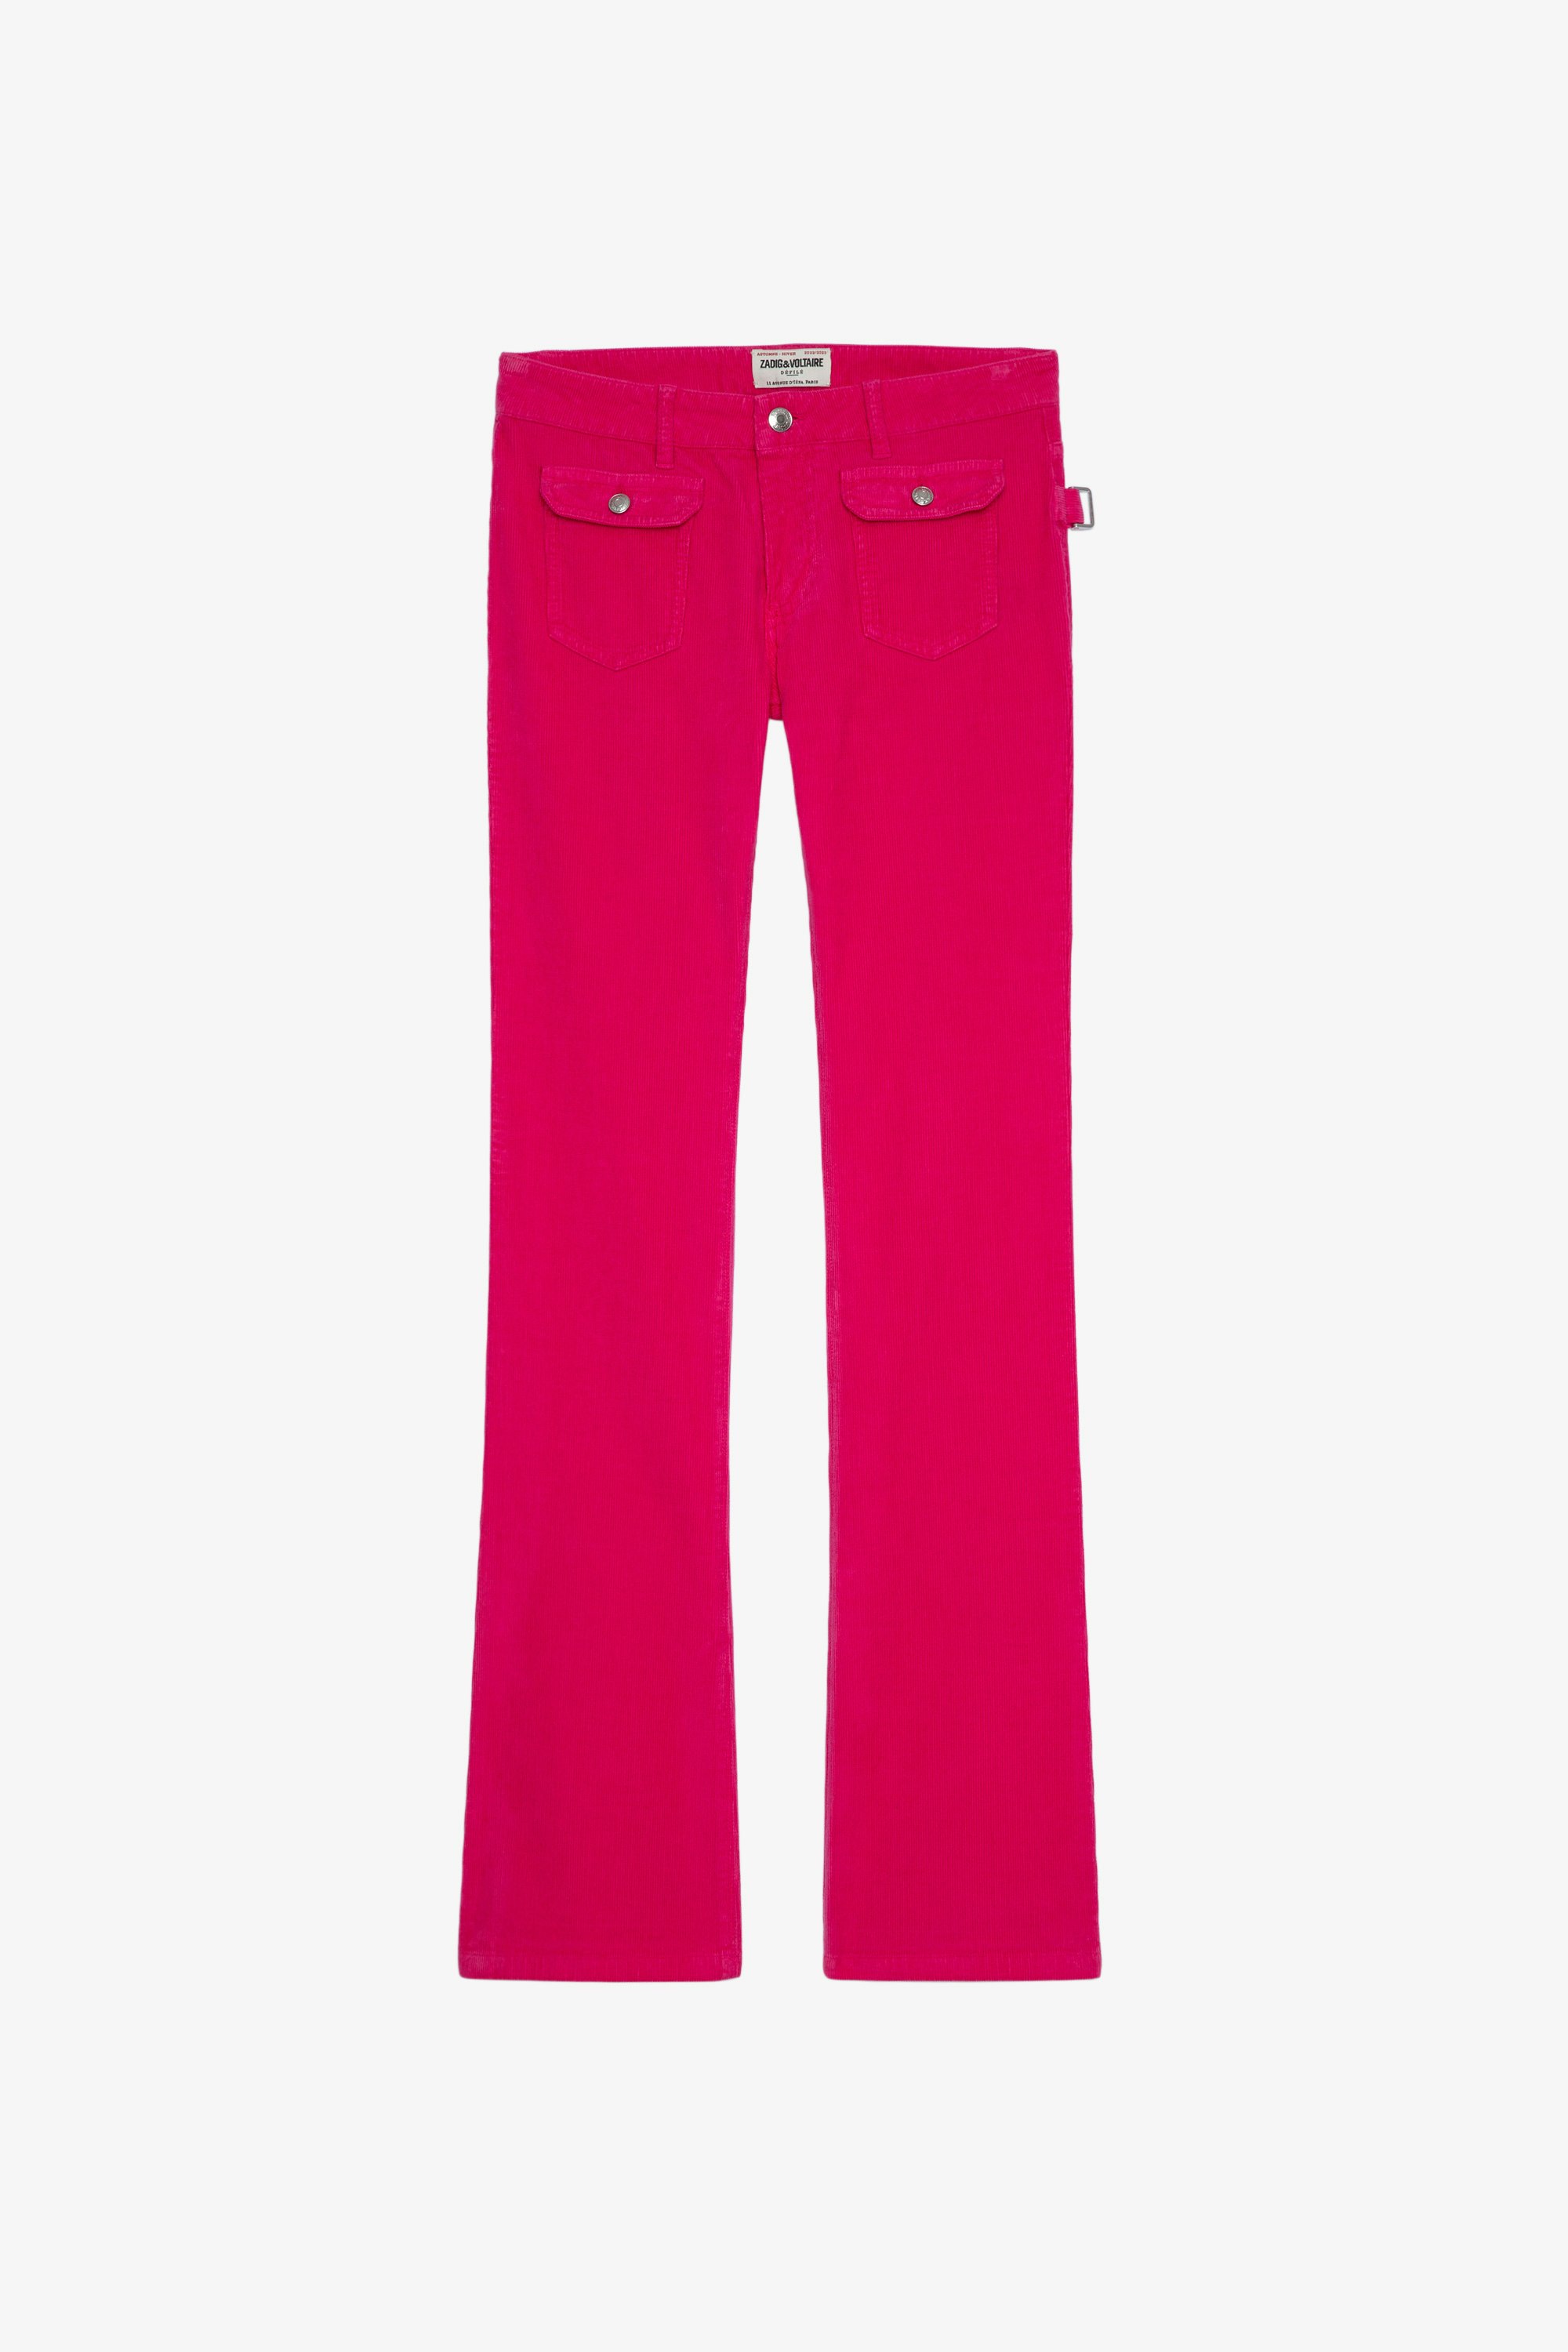 Hippie Velvet Trousers Women's Framboise corduroy wide-leg trousers